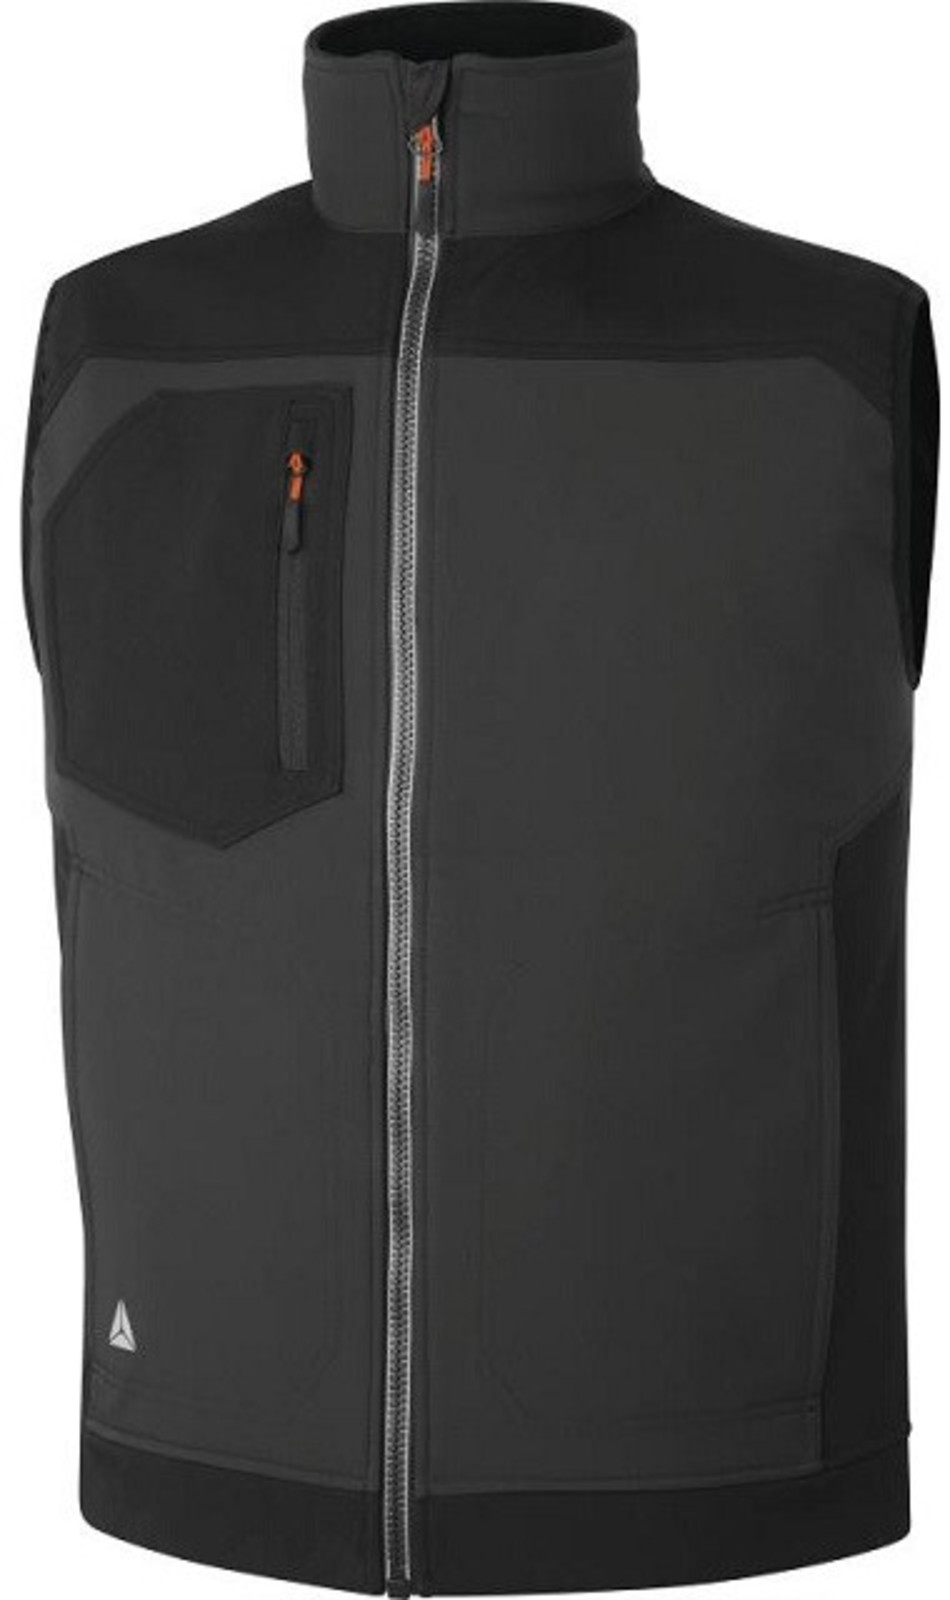 Softshellová vesta Delta Plus Holen - veľkosť: S, farba: sivá/čierna